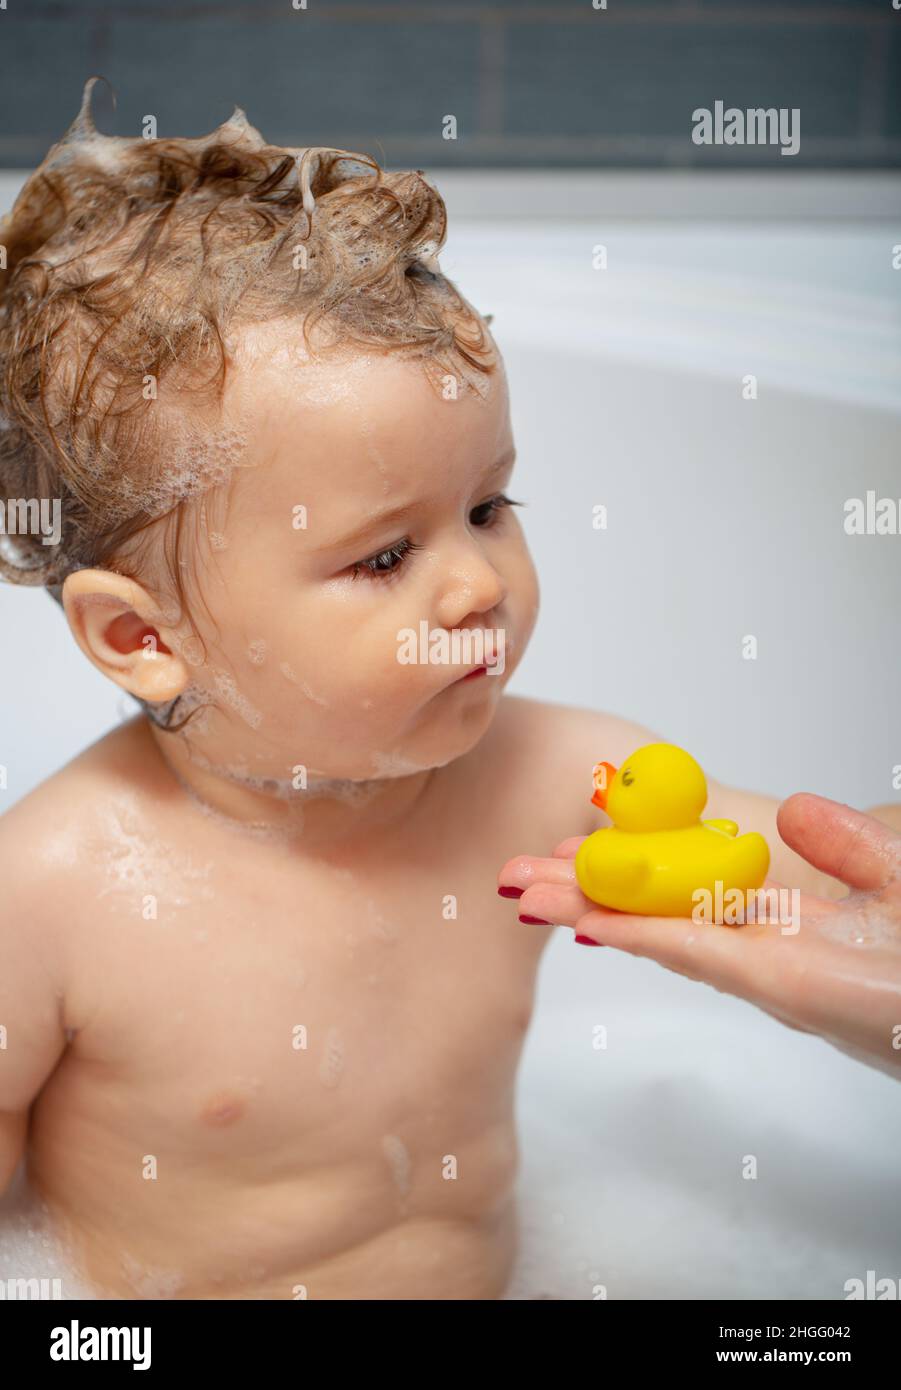 Baño burbujas para niños. Feliz tomando un con burbujas de espuma. Niño pequeño en la bañera. Niño sonriente en el baño con pato de juguete. Bebé Fotografía de